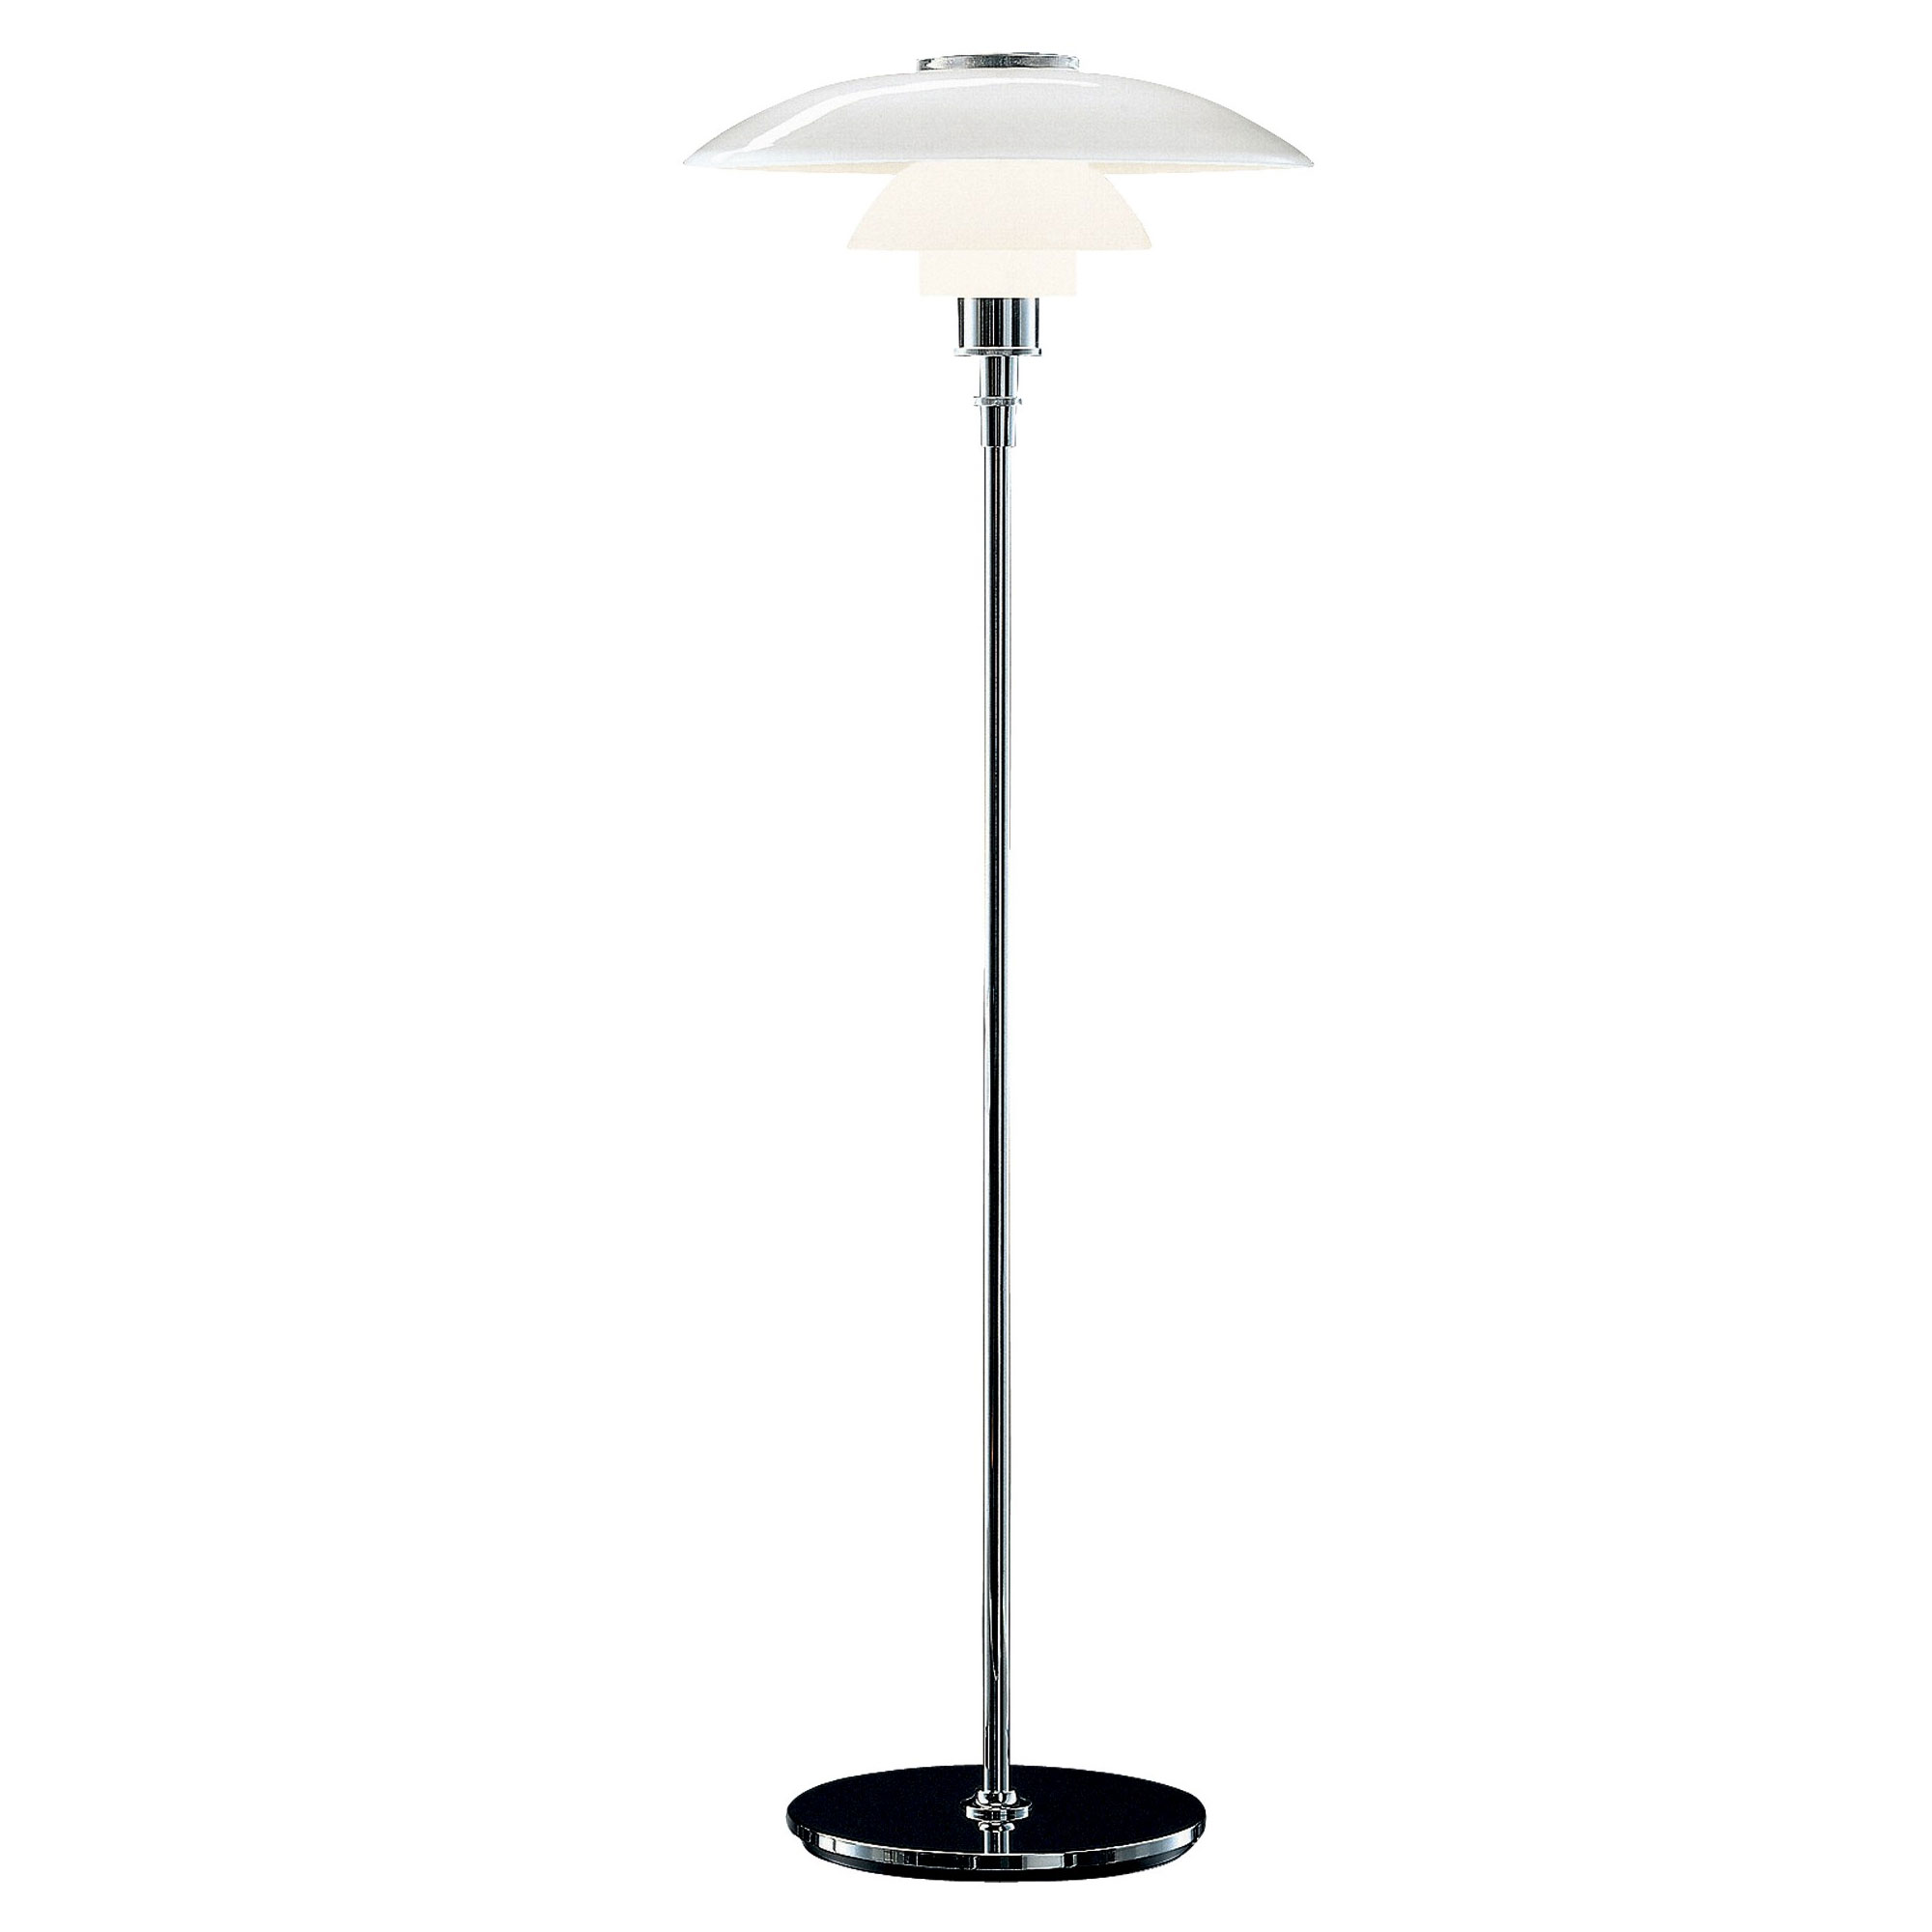 Louis Poulsen PH 4/3 table lamp